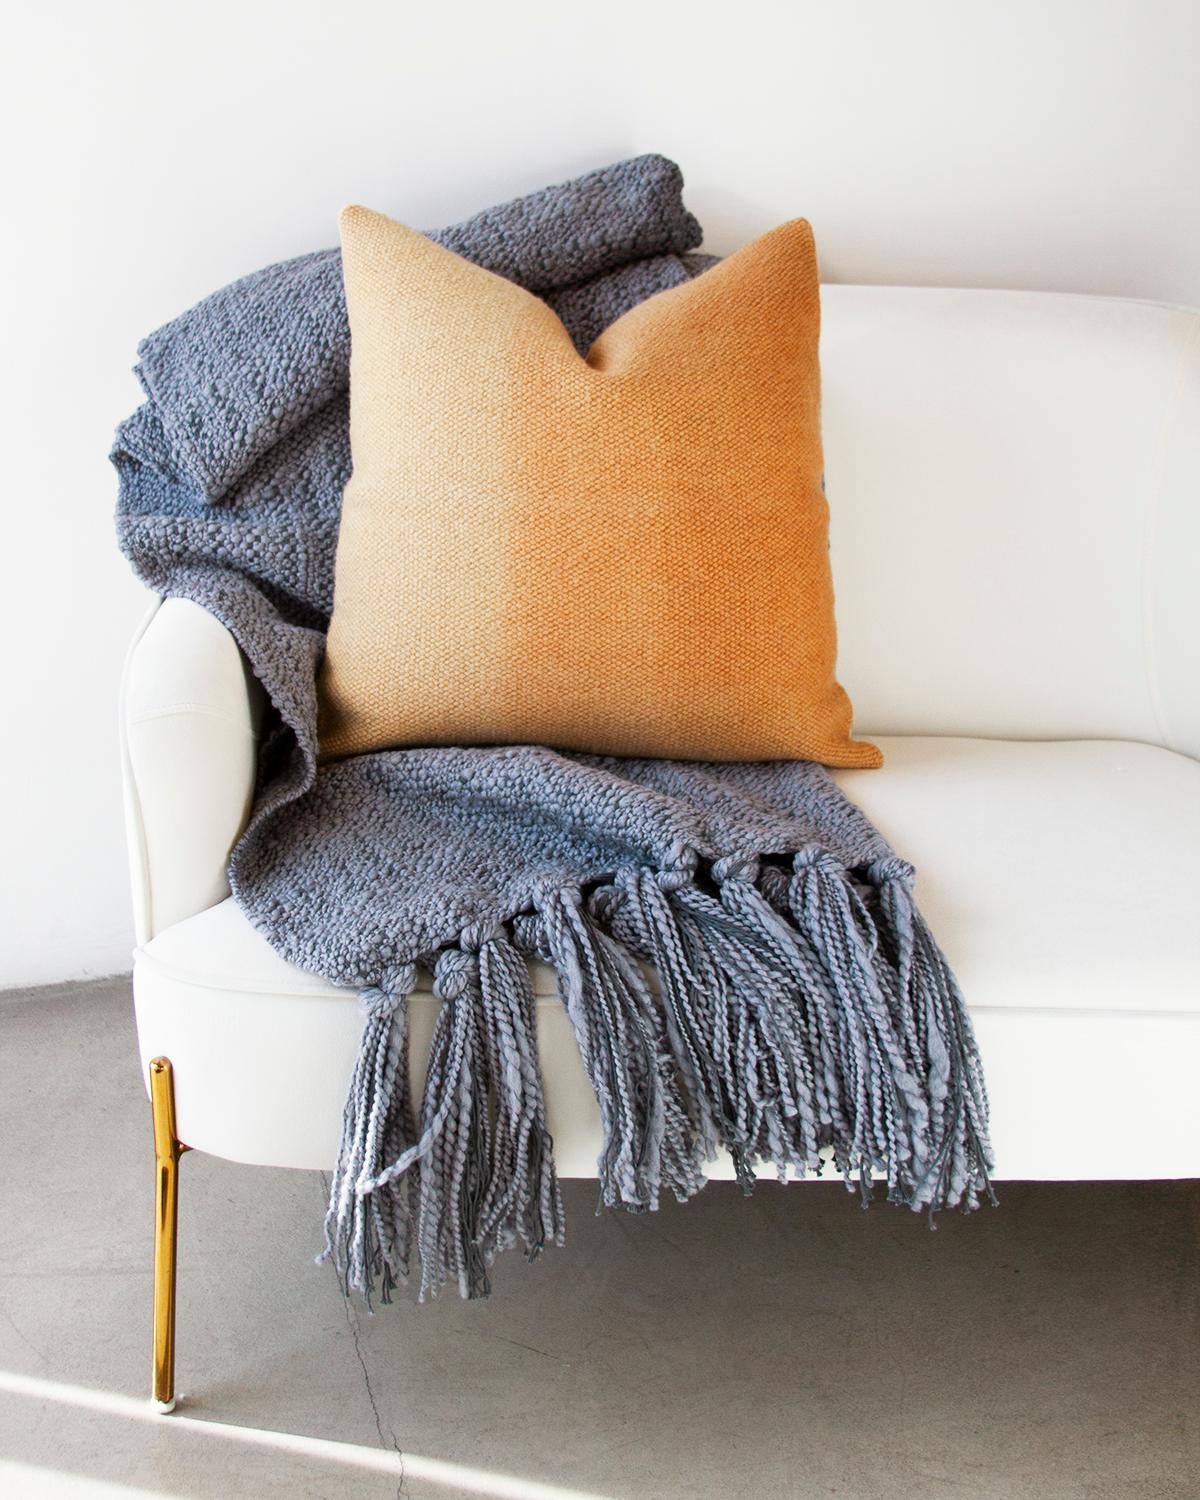 Bringen Sie etwas Farbe in Ihre Couch. Das Matiz Gold Ombre Throw Pillow ist eine einzigartige Möglichkeit, Ihrer Einrichtung einen organischen, modernen Stil zu verleihen. Der Ombre-Effekt wurde mit Pflanzenfarben in bernsteingelben und